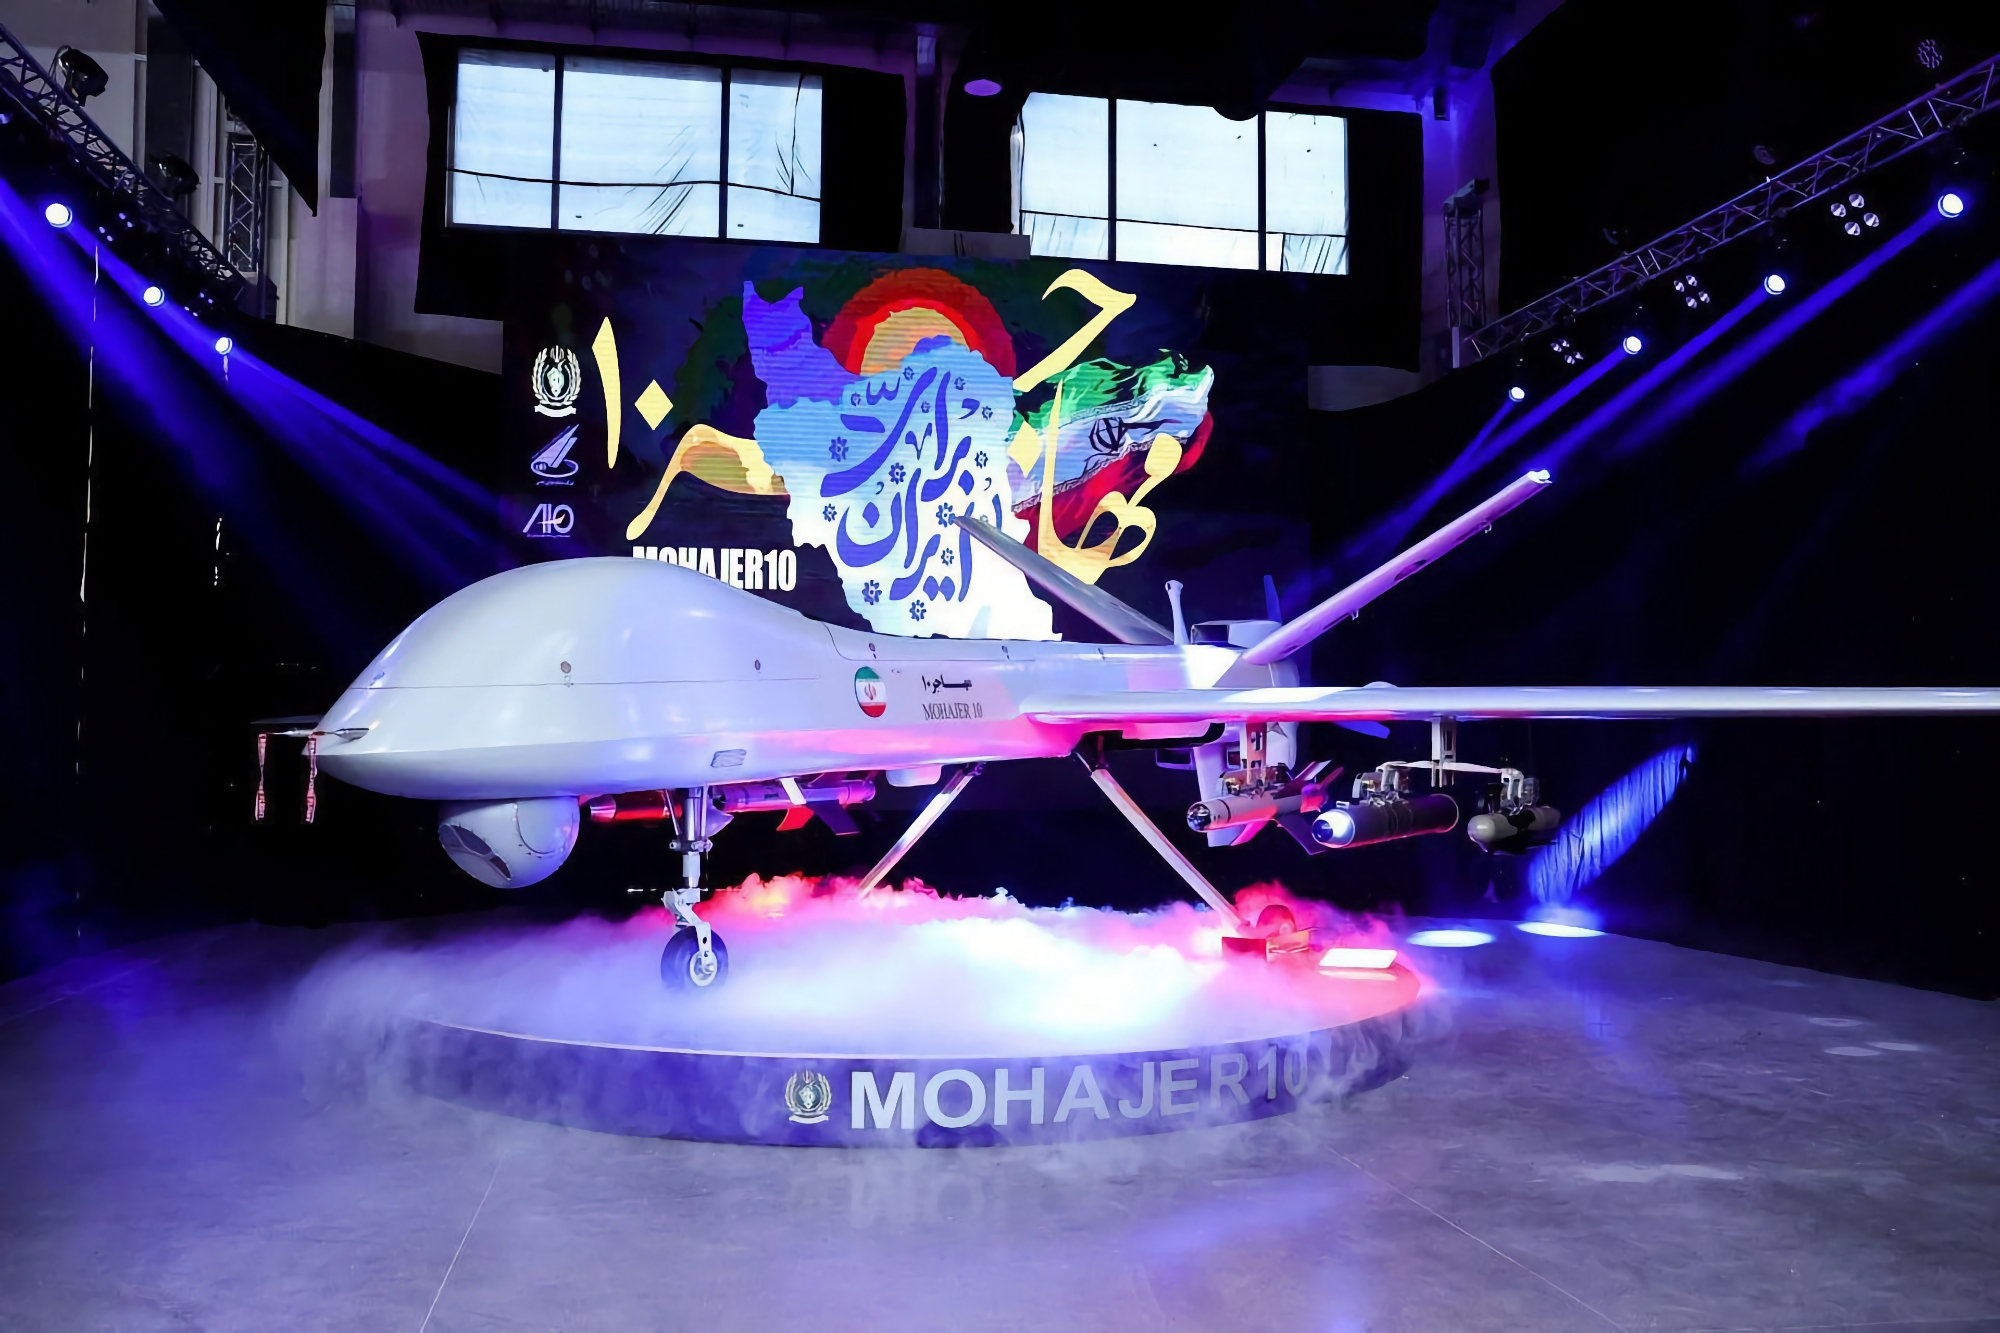 Iran har presenterat attack- och spaningsdrönaren Mohajer-10 med en design som liknar MQ-9 Reaper, den kan flyga i en hastighet av 210 kilometer i timmen upp till 2 000 kilometers avstånd